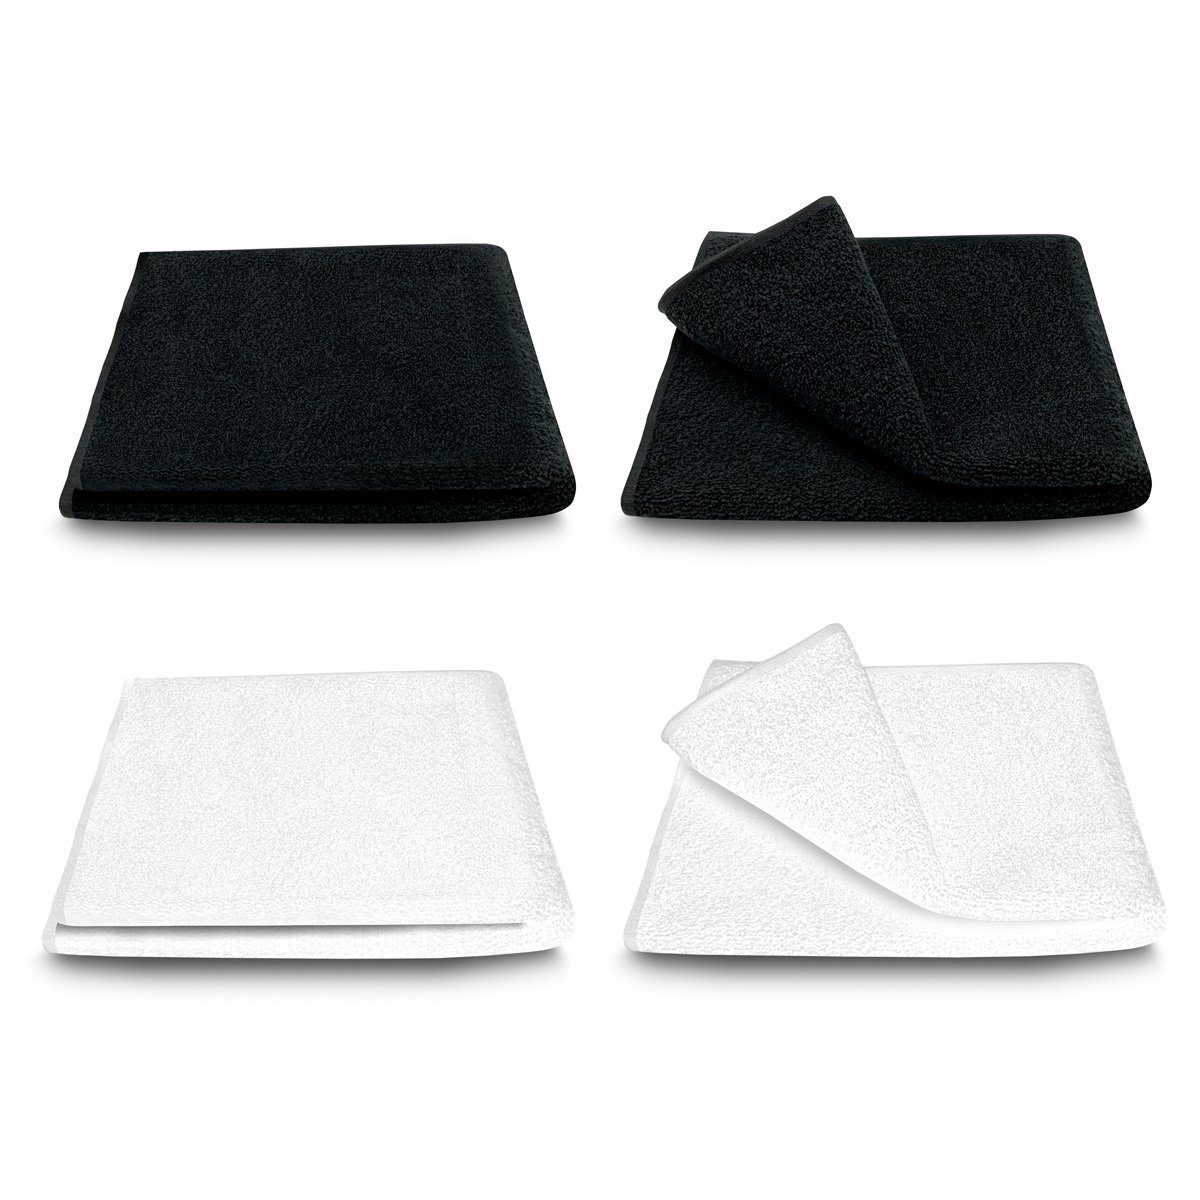 ARLI Handtuch Set Handtuch Handtuchaufhänger, schwarz mit hochwertigem schlicht weiß x Design aus klassischer Serie (4-tlg) praktisch 2 Handtücher Frottier elegant 2 4 Set Baumwolle modern Rohstoff 100